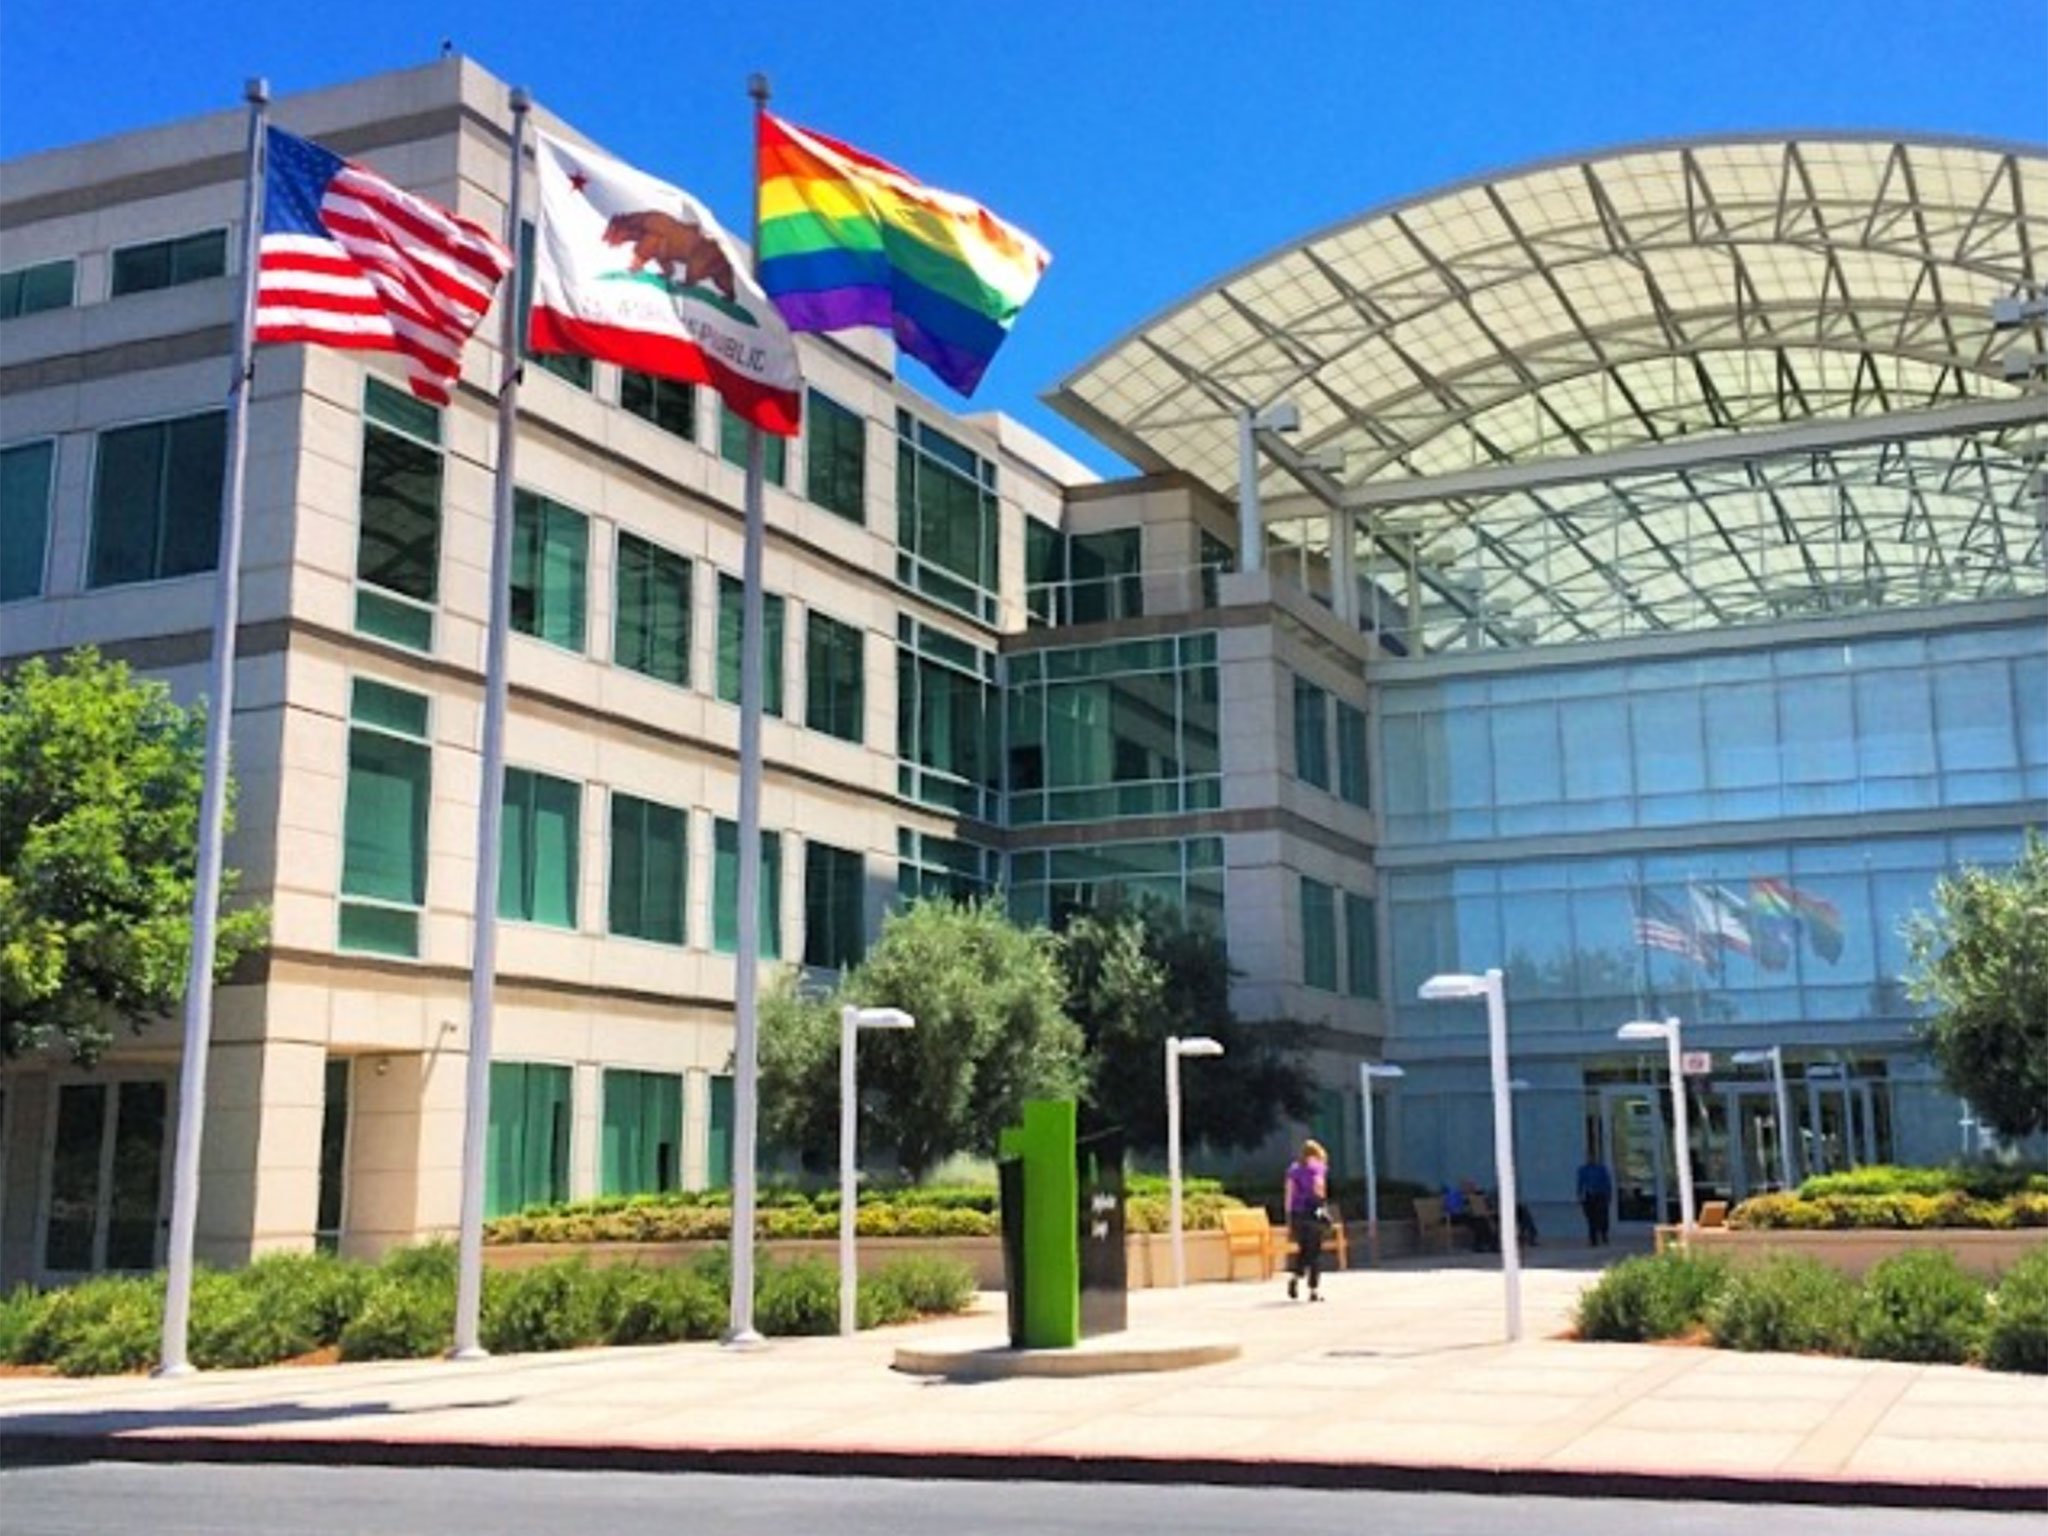 Apple headquarter pride flag